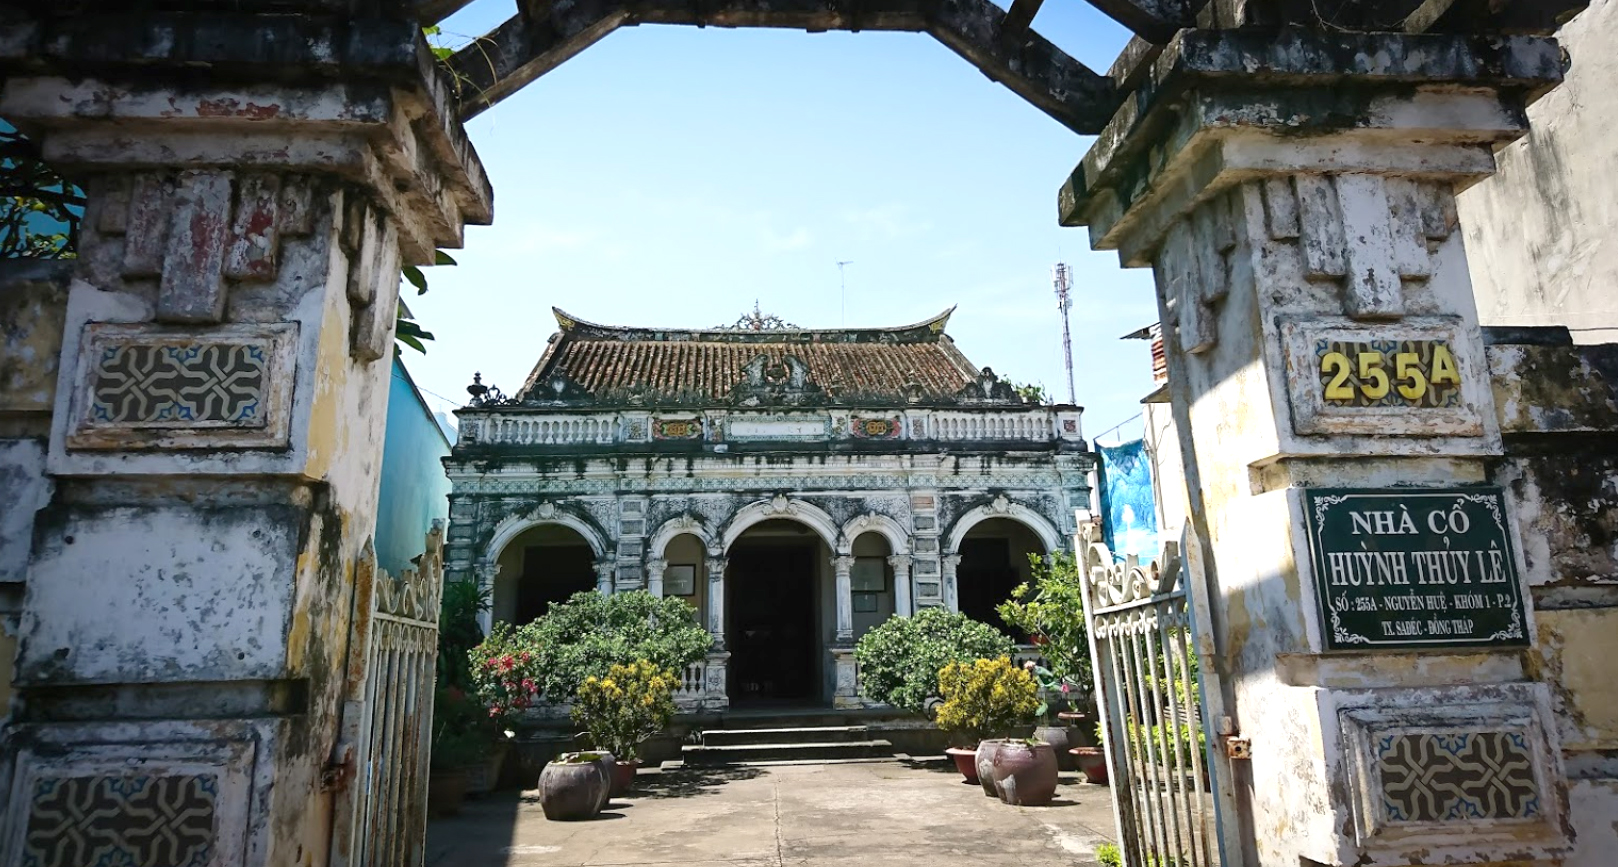 Nhà cổ Huỳnh Thuỷ Lê là một trong những địa điểm tham quan hấp dẫn nhất tại khu vực Đồng Tháp và gắn liền với lịch sử phát triển của vùng đất này. 